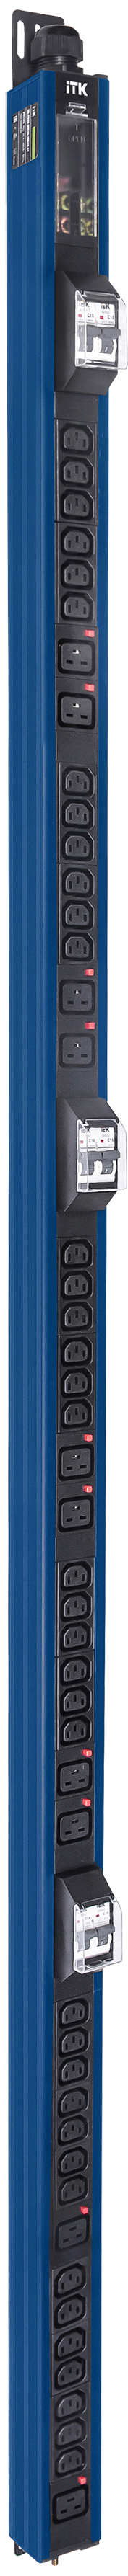 ITK BASE PDU вертикальный PV1113 45U 3 фазы 32А 38 розеток C13 + 10 розеток C19 с клеммной колодкой и кабелем 6м вилка IEC60309 (промышленная) синий